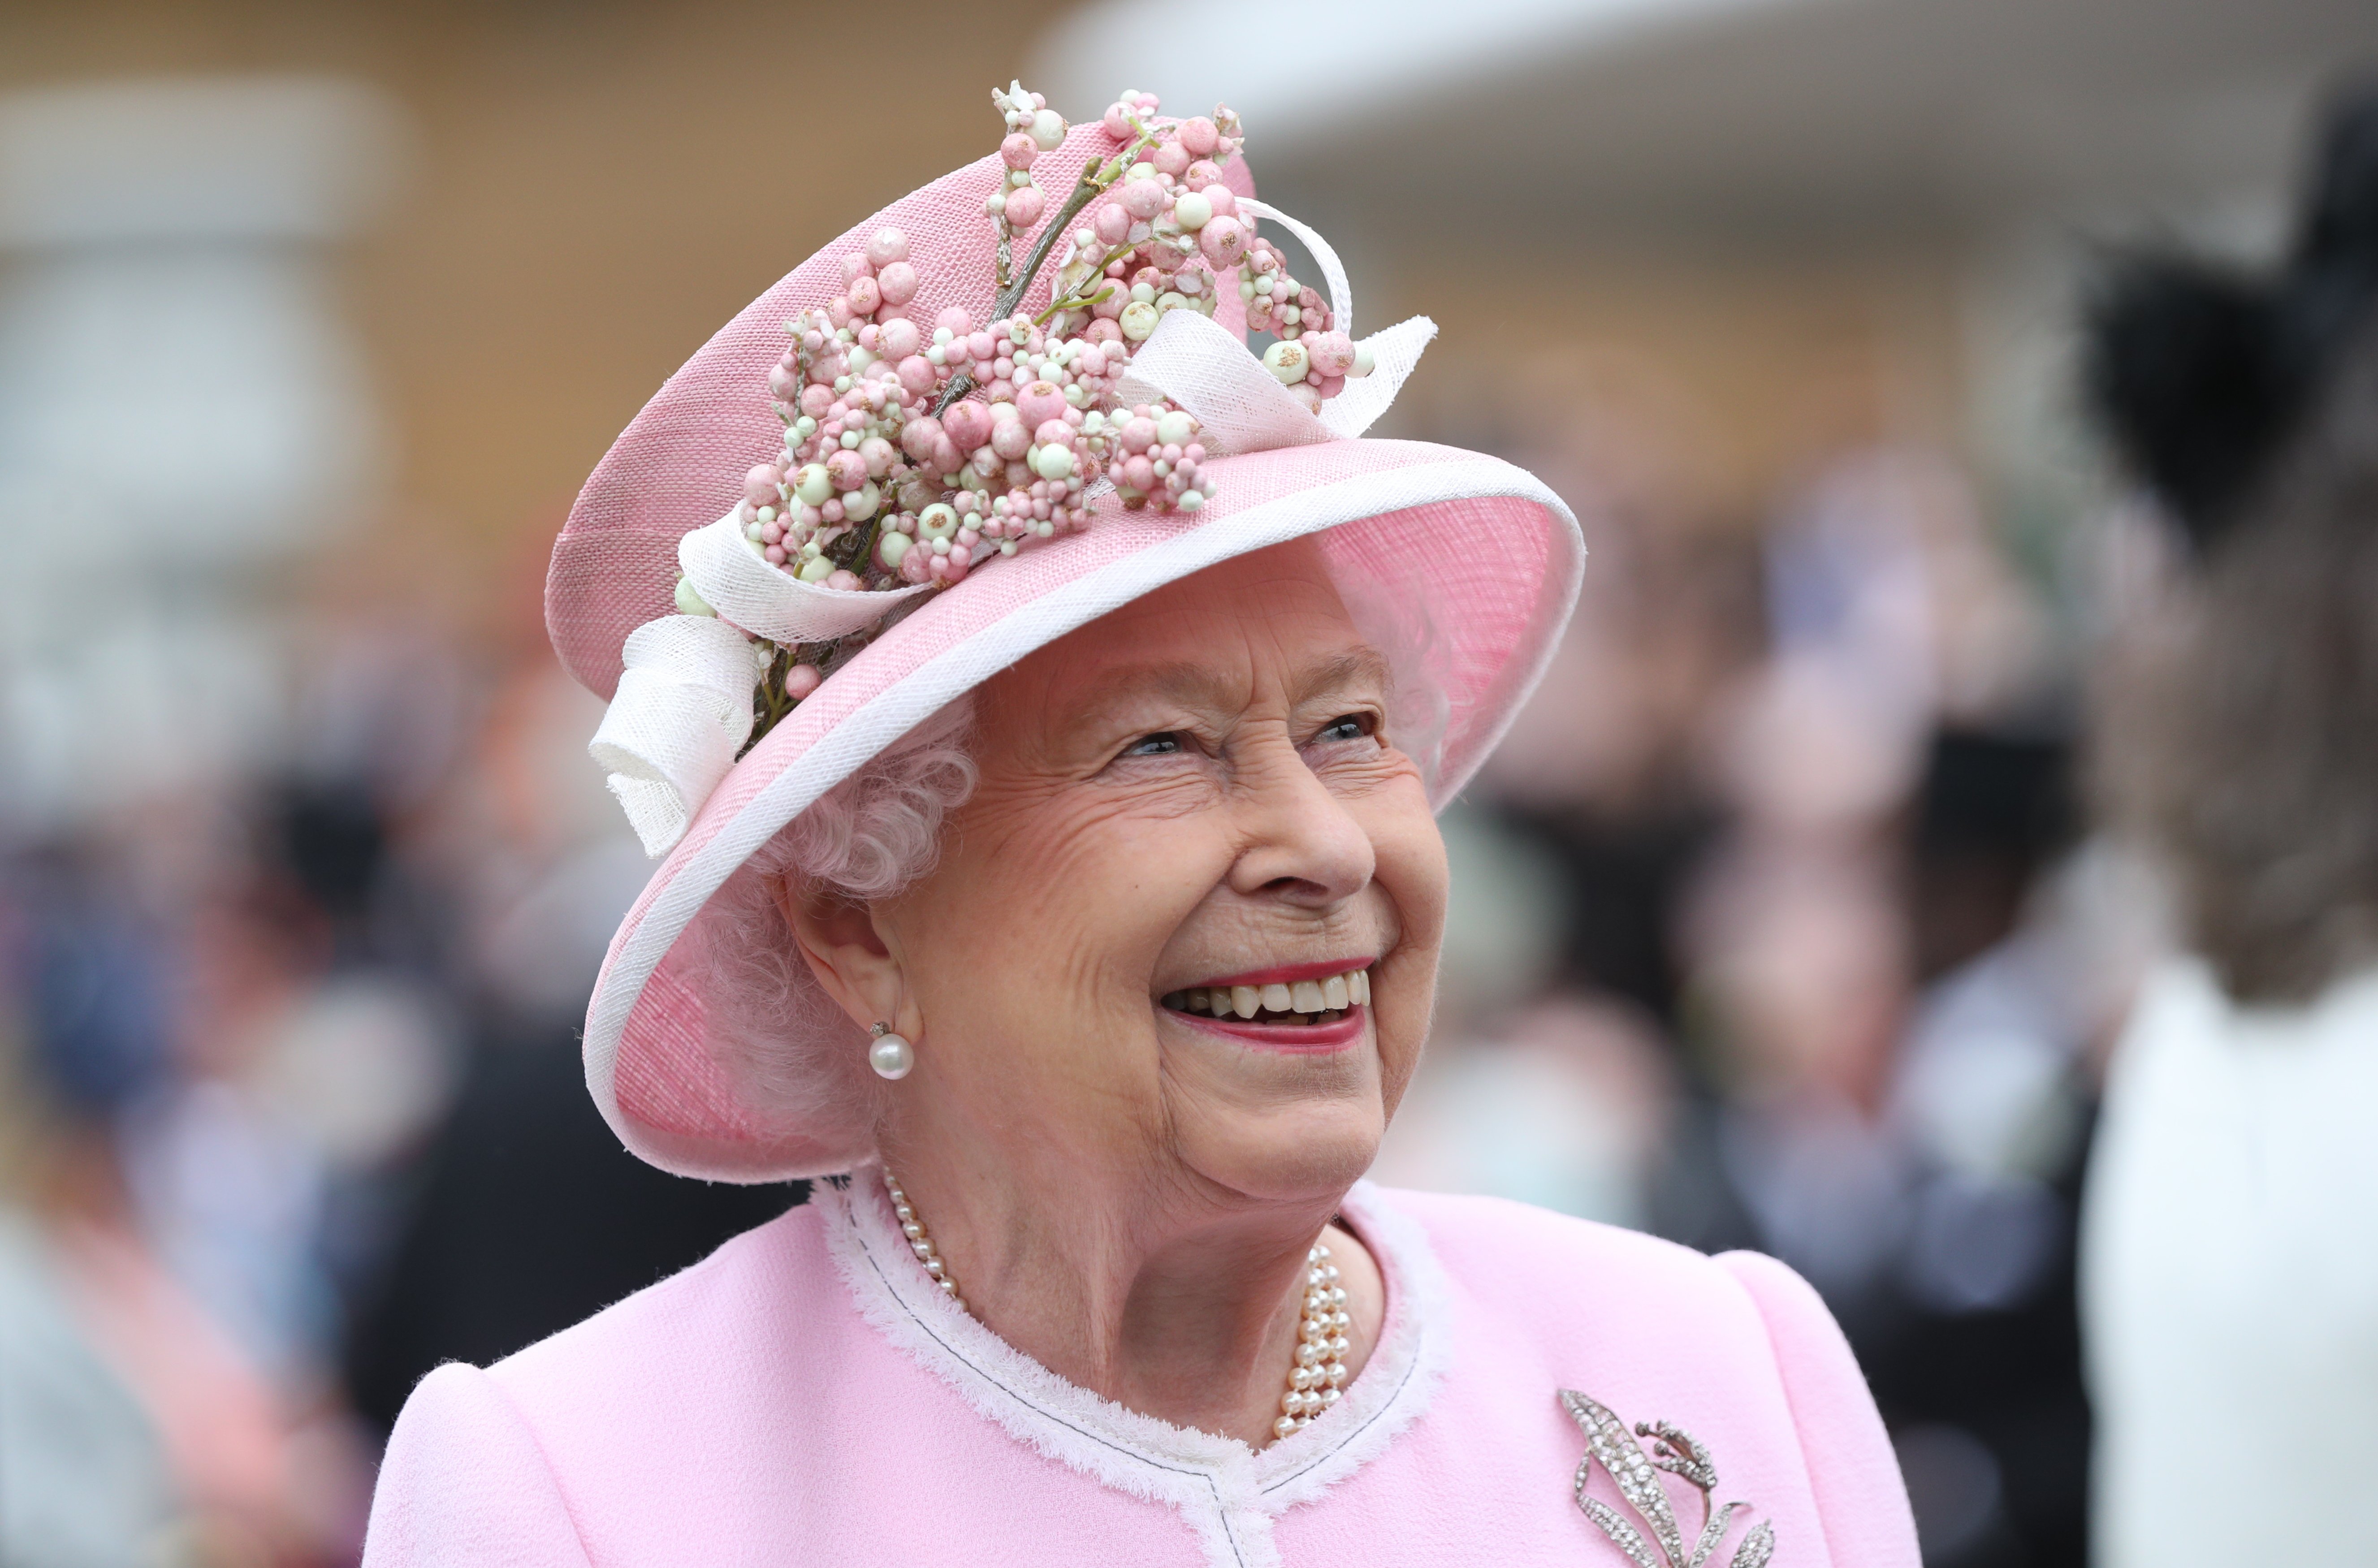 La reine Elizabeth II assiste à la Royal Garden Party au palais de Buckingham, le 29 mai 2019 à Londres, en Angleterre.│Source : Getty Images